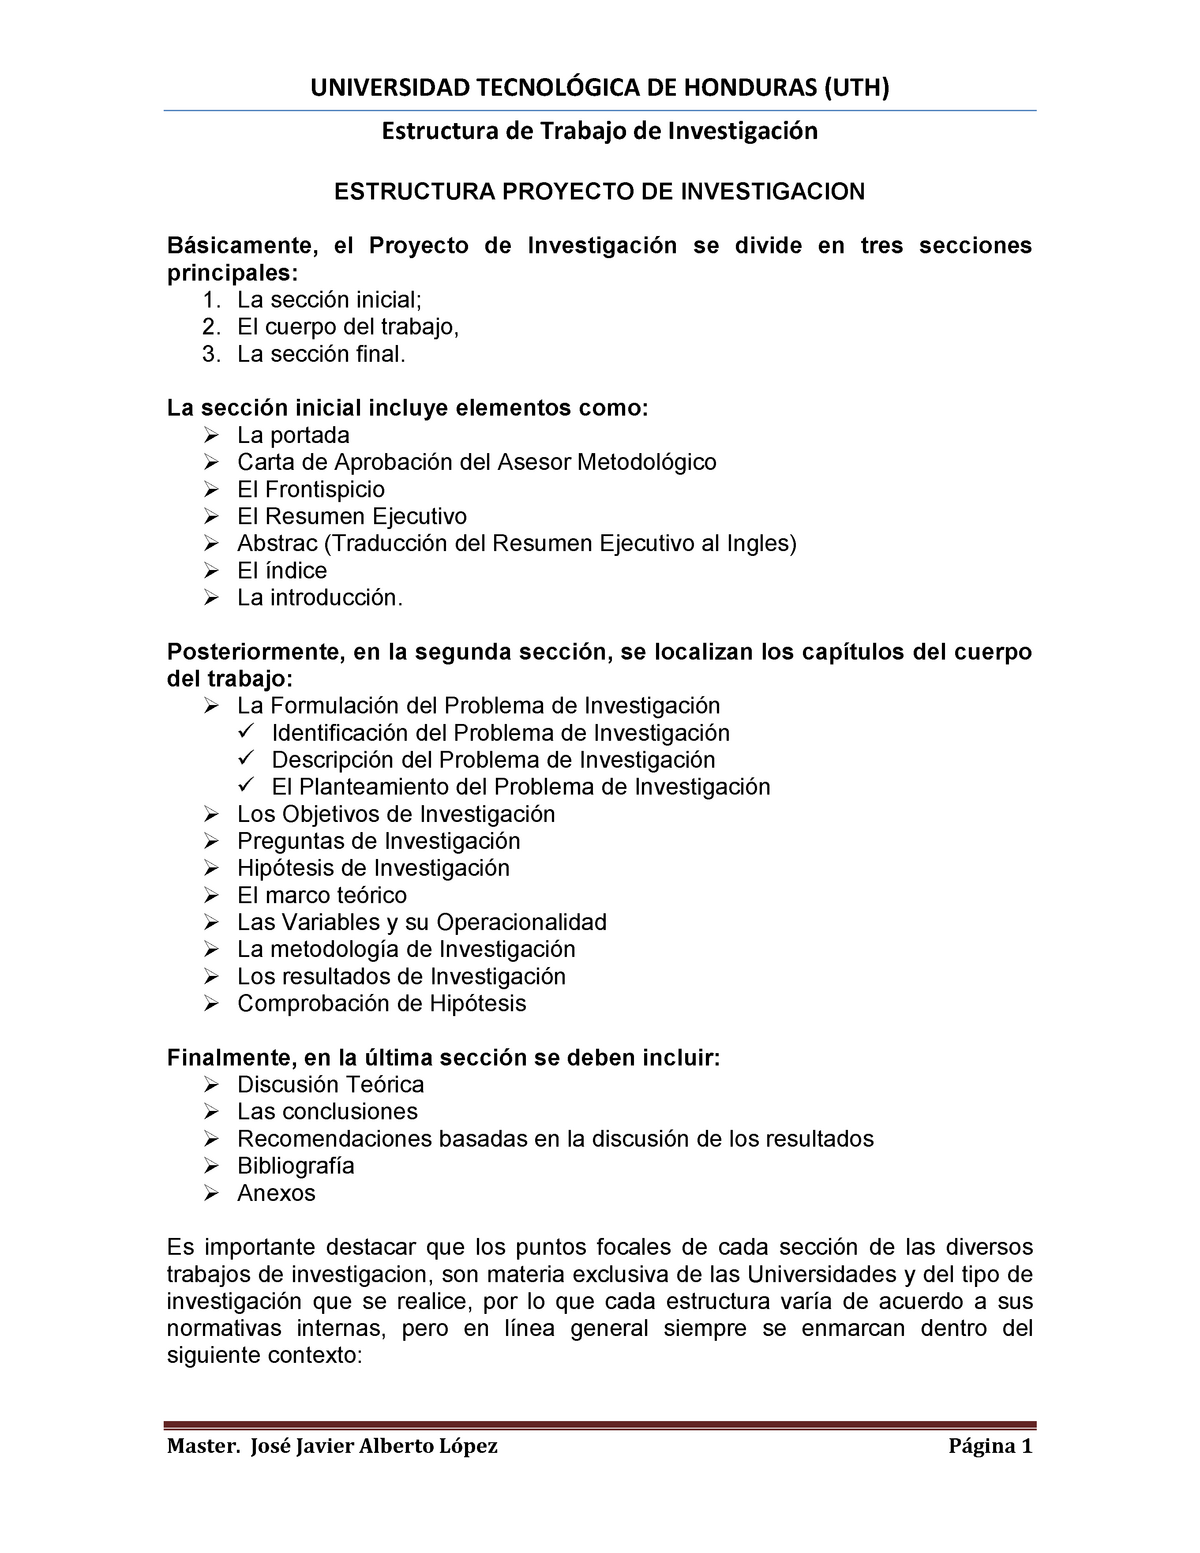 Estructura Proyecto De Investigacion Estructura De Trabajo De Investigación Estructura 9192